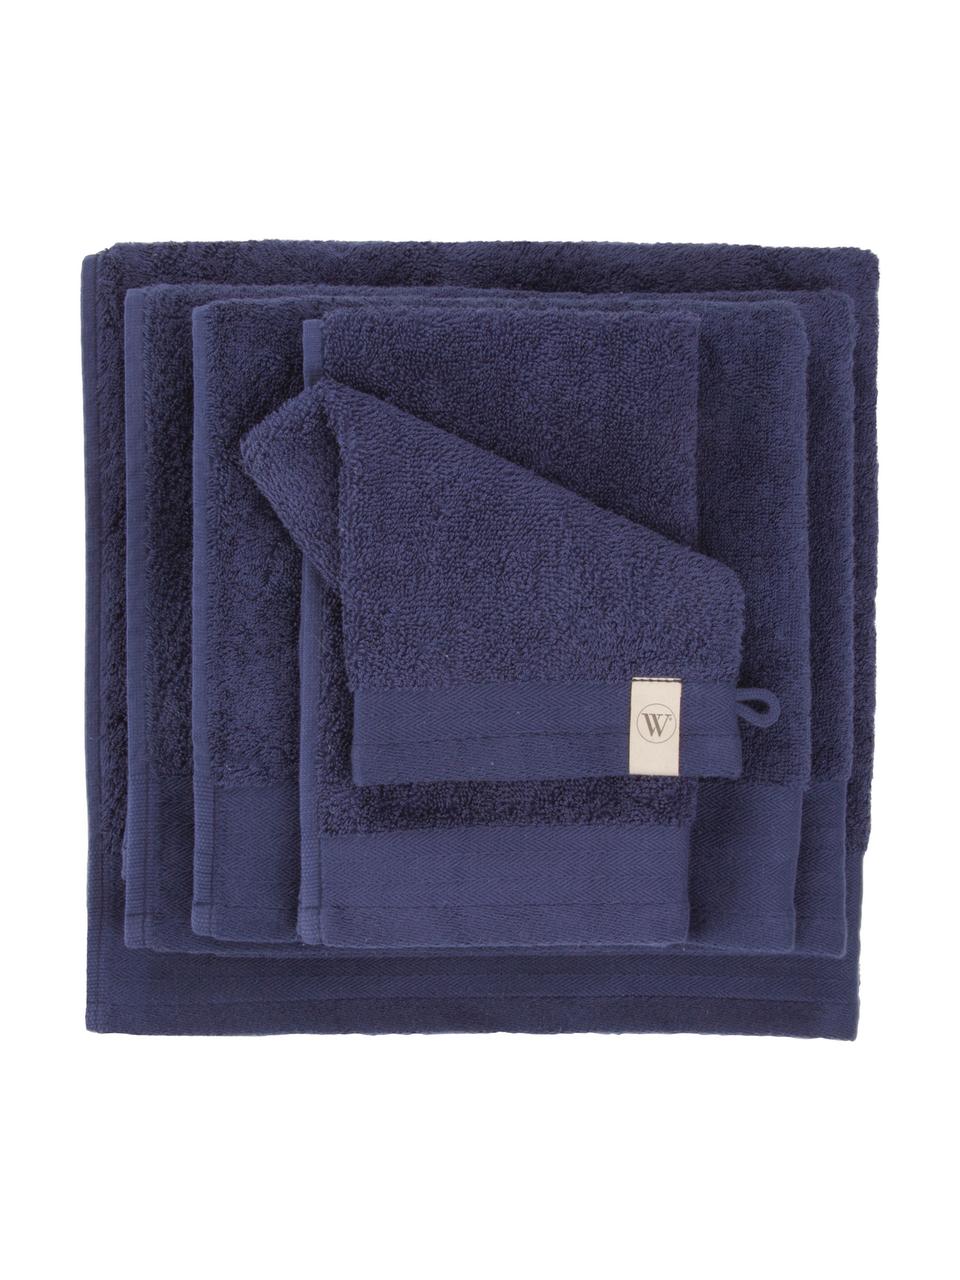 Waschlappen Soft Cotton, 2 Stück, Navyblau, B 16 x L 21 cm